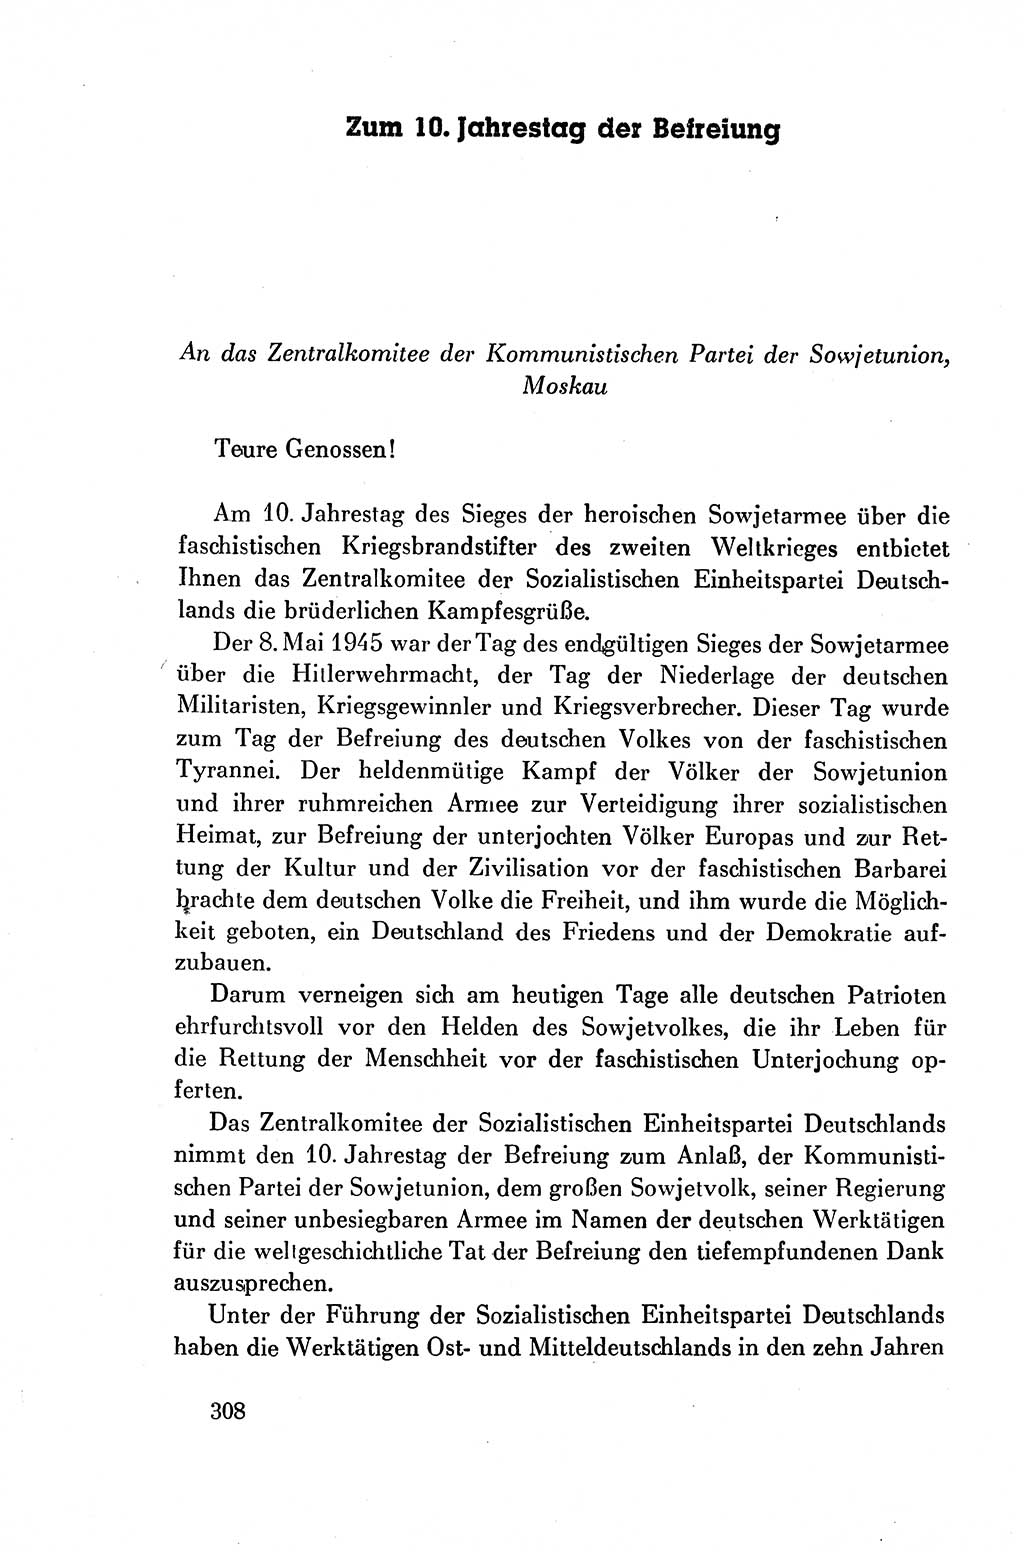 Dokumente der Sozialistischen Einheitspartei Deutschlands (SED) [Deutsche Demokratische Republik (DDR)] 1954-1955, Seite 308 (Dok. SED DDR 1954-1955, S. 308)